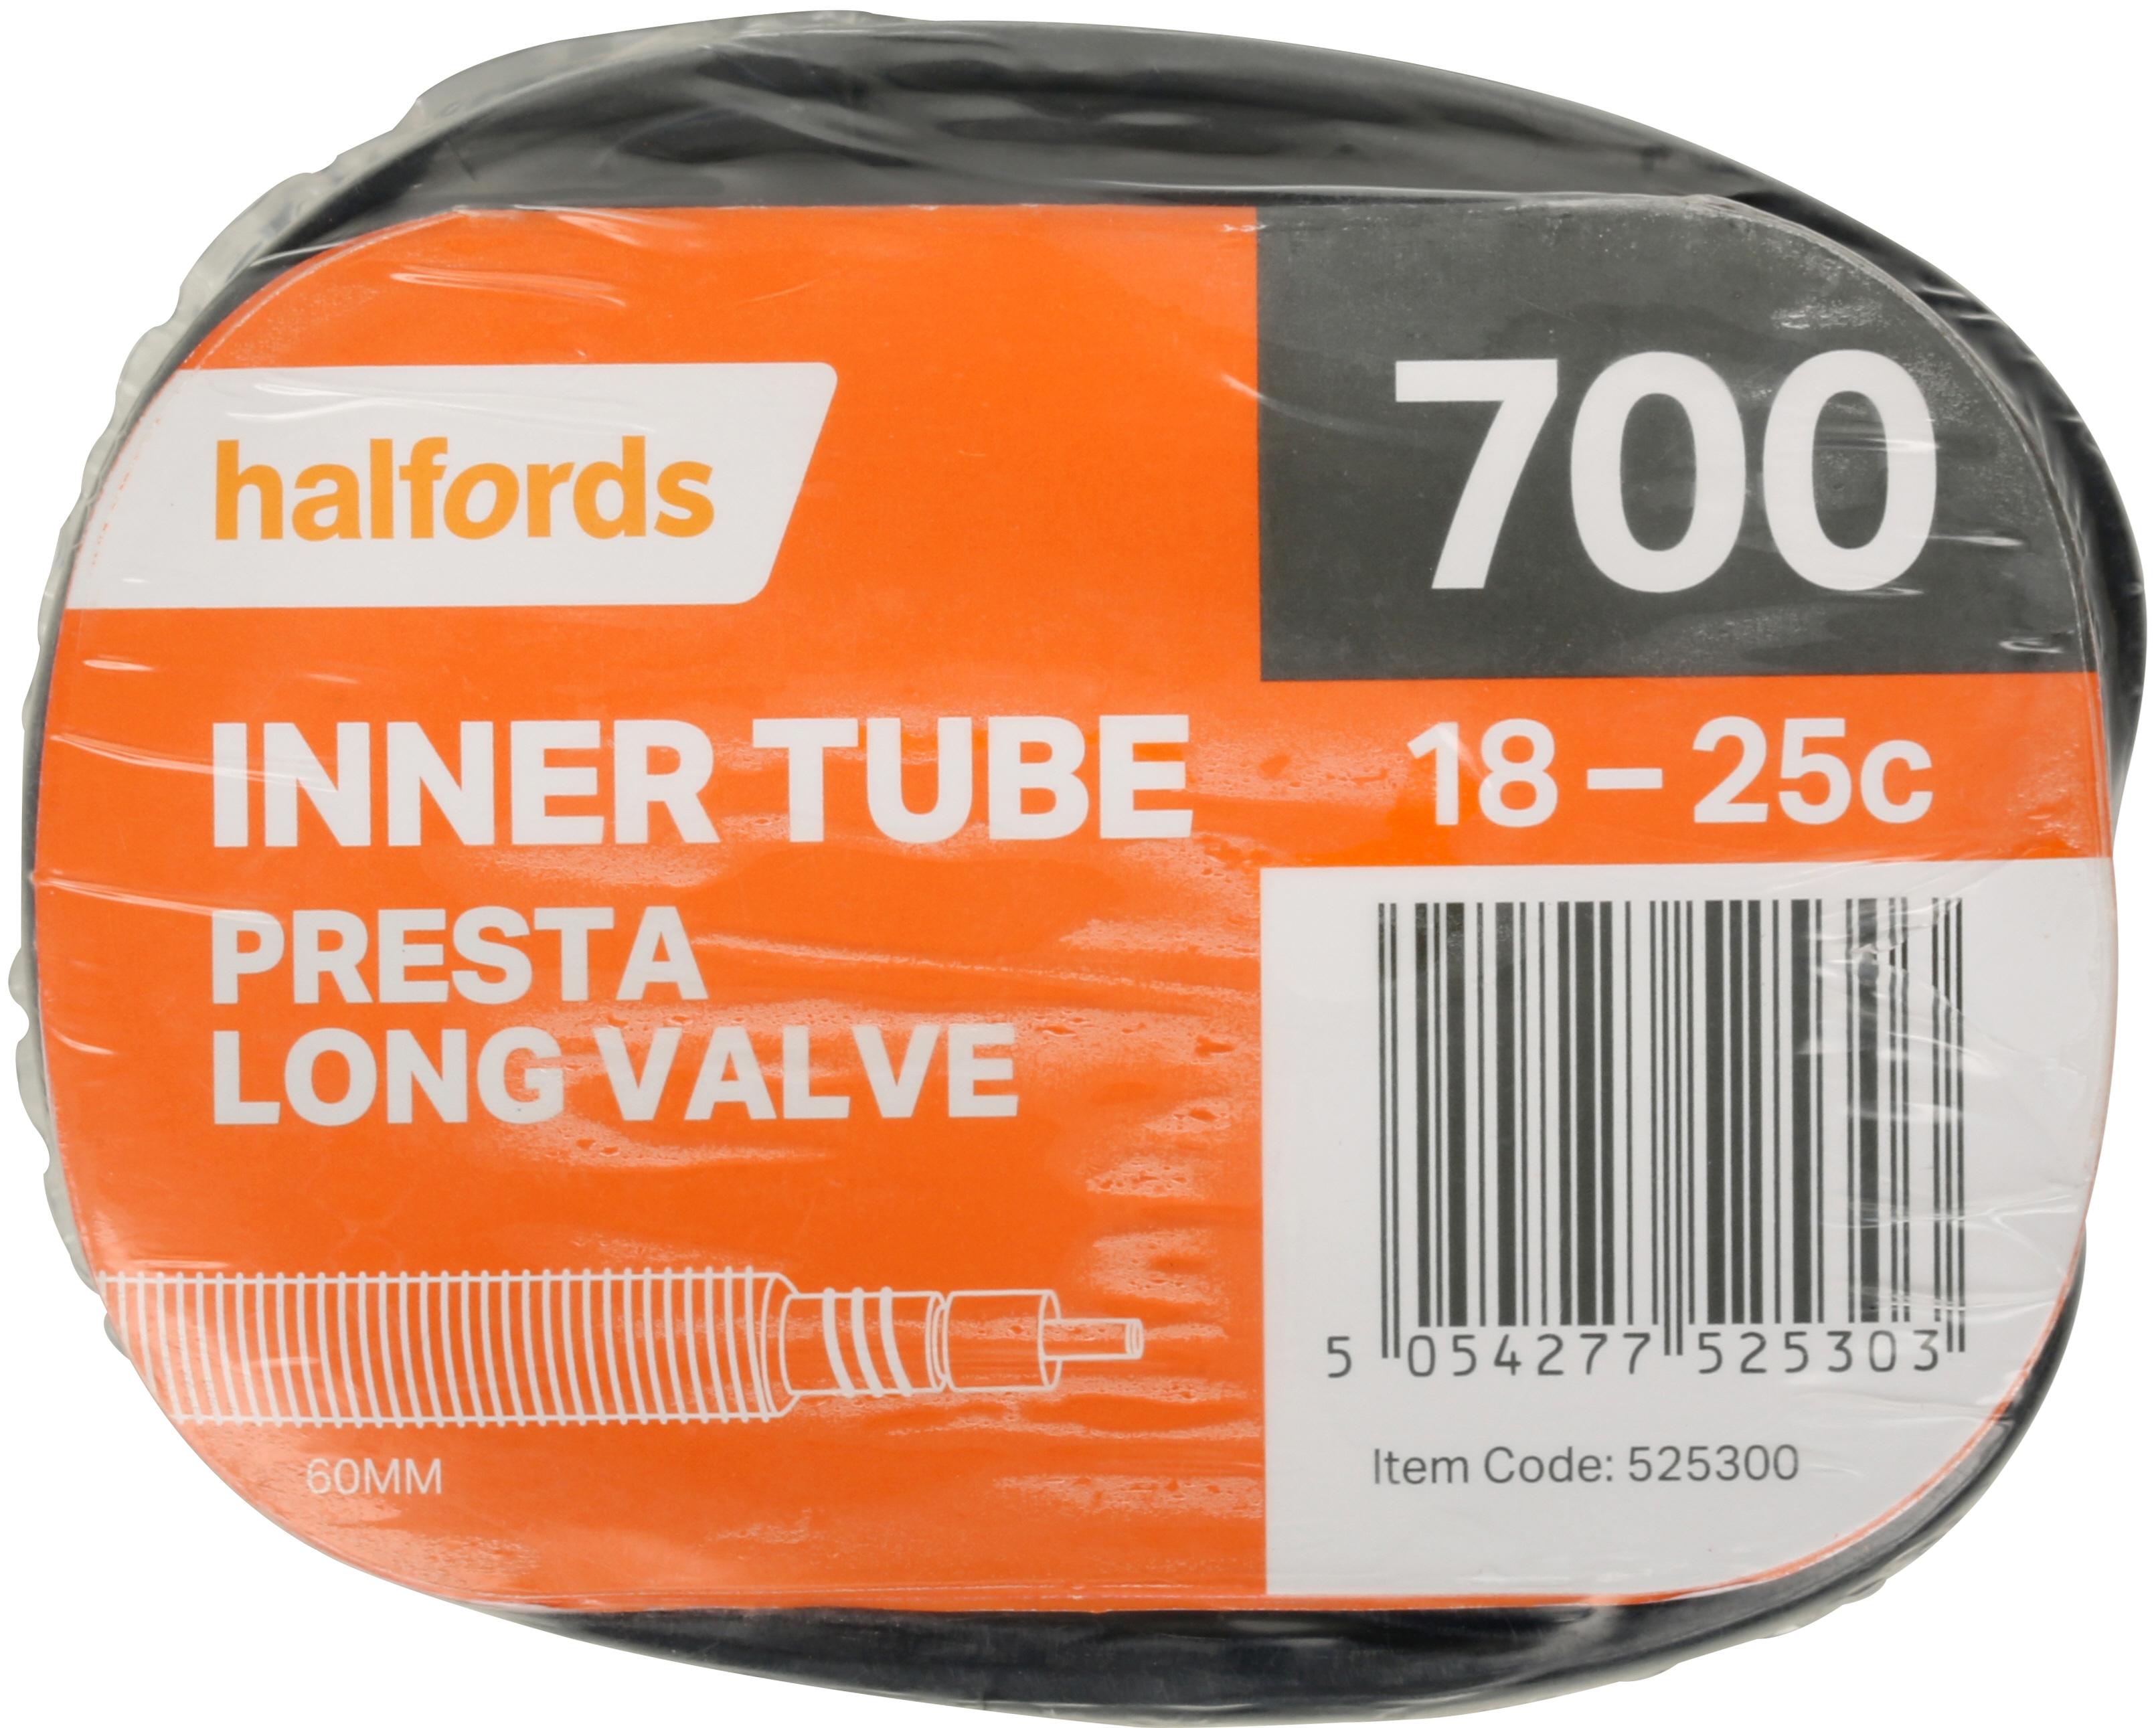 700c inner tube long valve